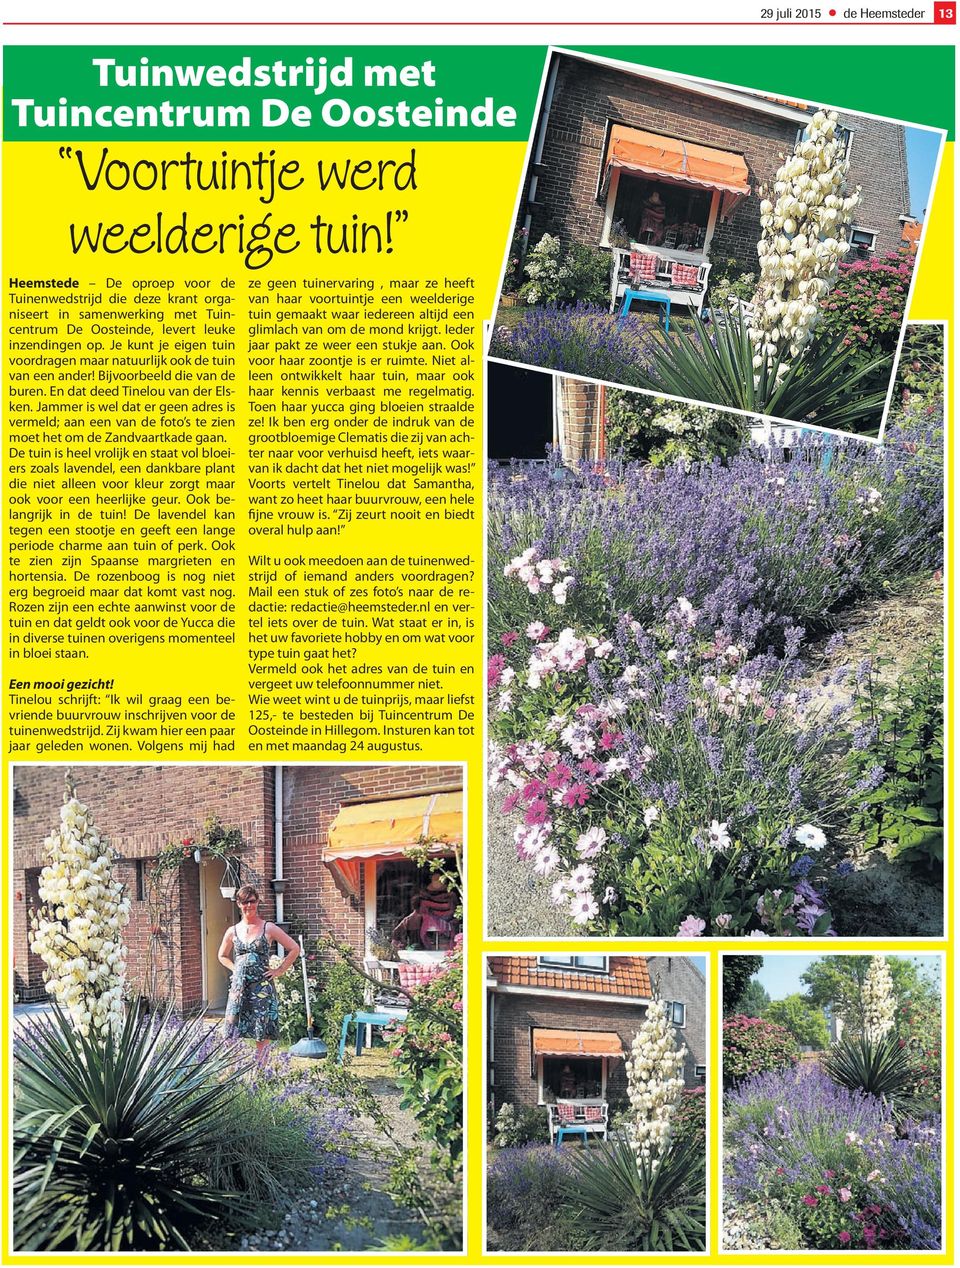 Je kunt je eigen tuin voordragen maar natuurlijk ook de tuin van een ander! Bijvoorbeeld die van de buren. En dat deed Tinelou van der Elsken.